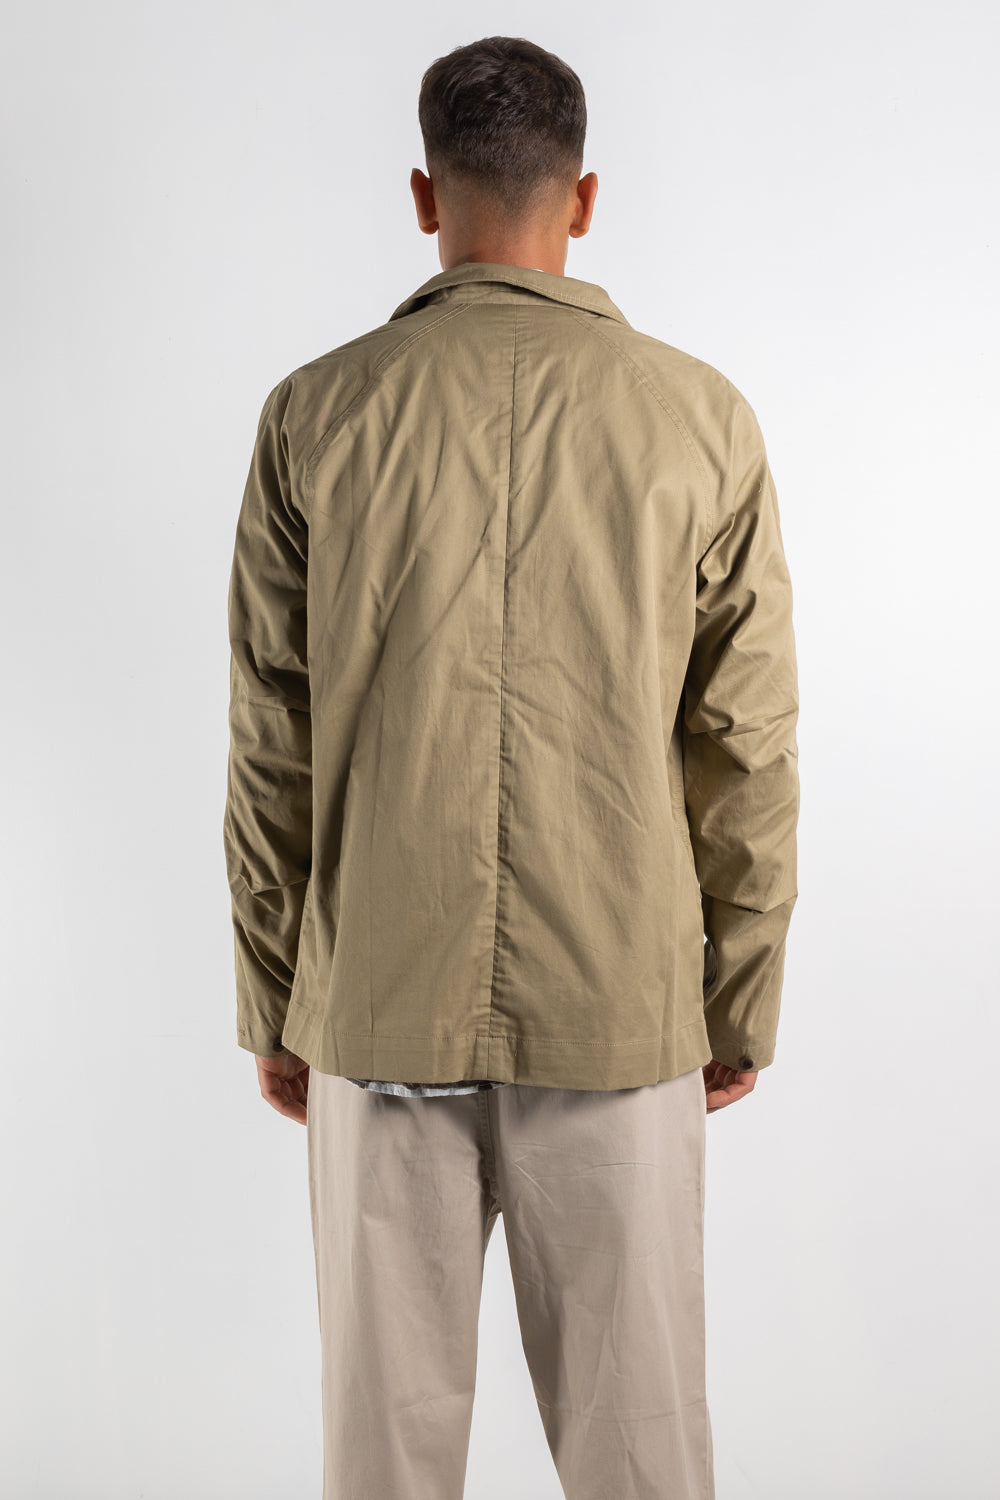 Mens Jacket | Garbstore M65 Blazer | The Standard Store